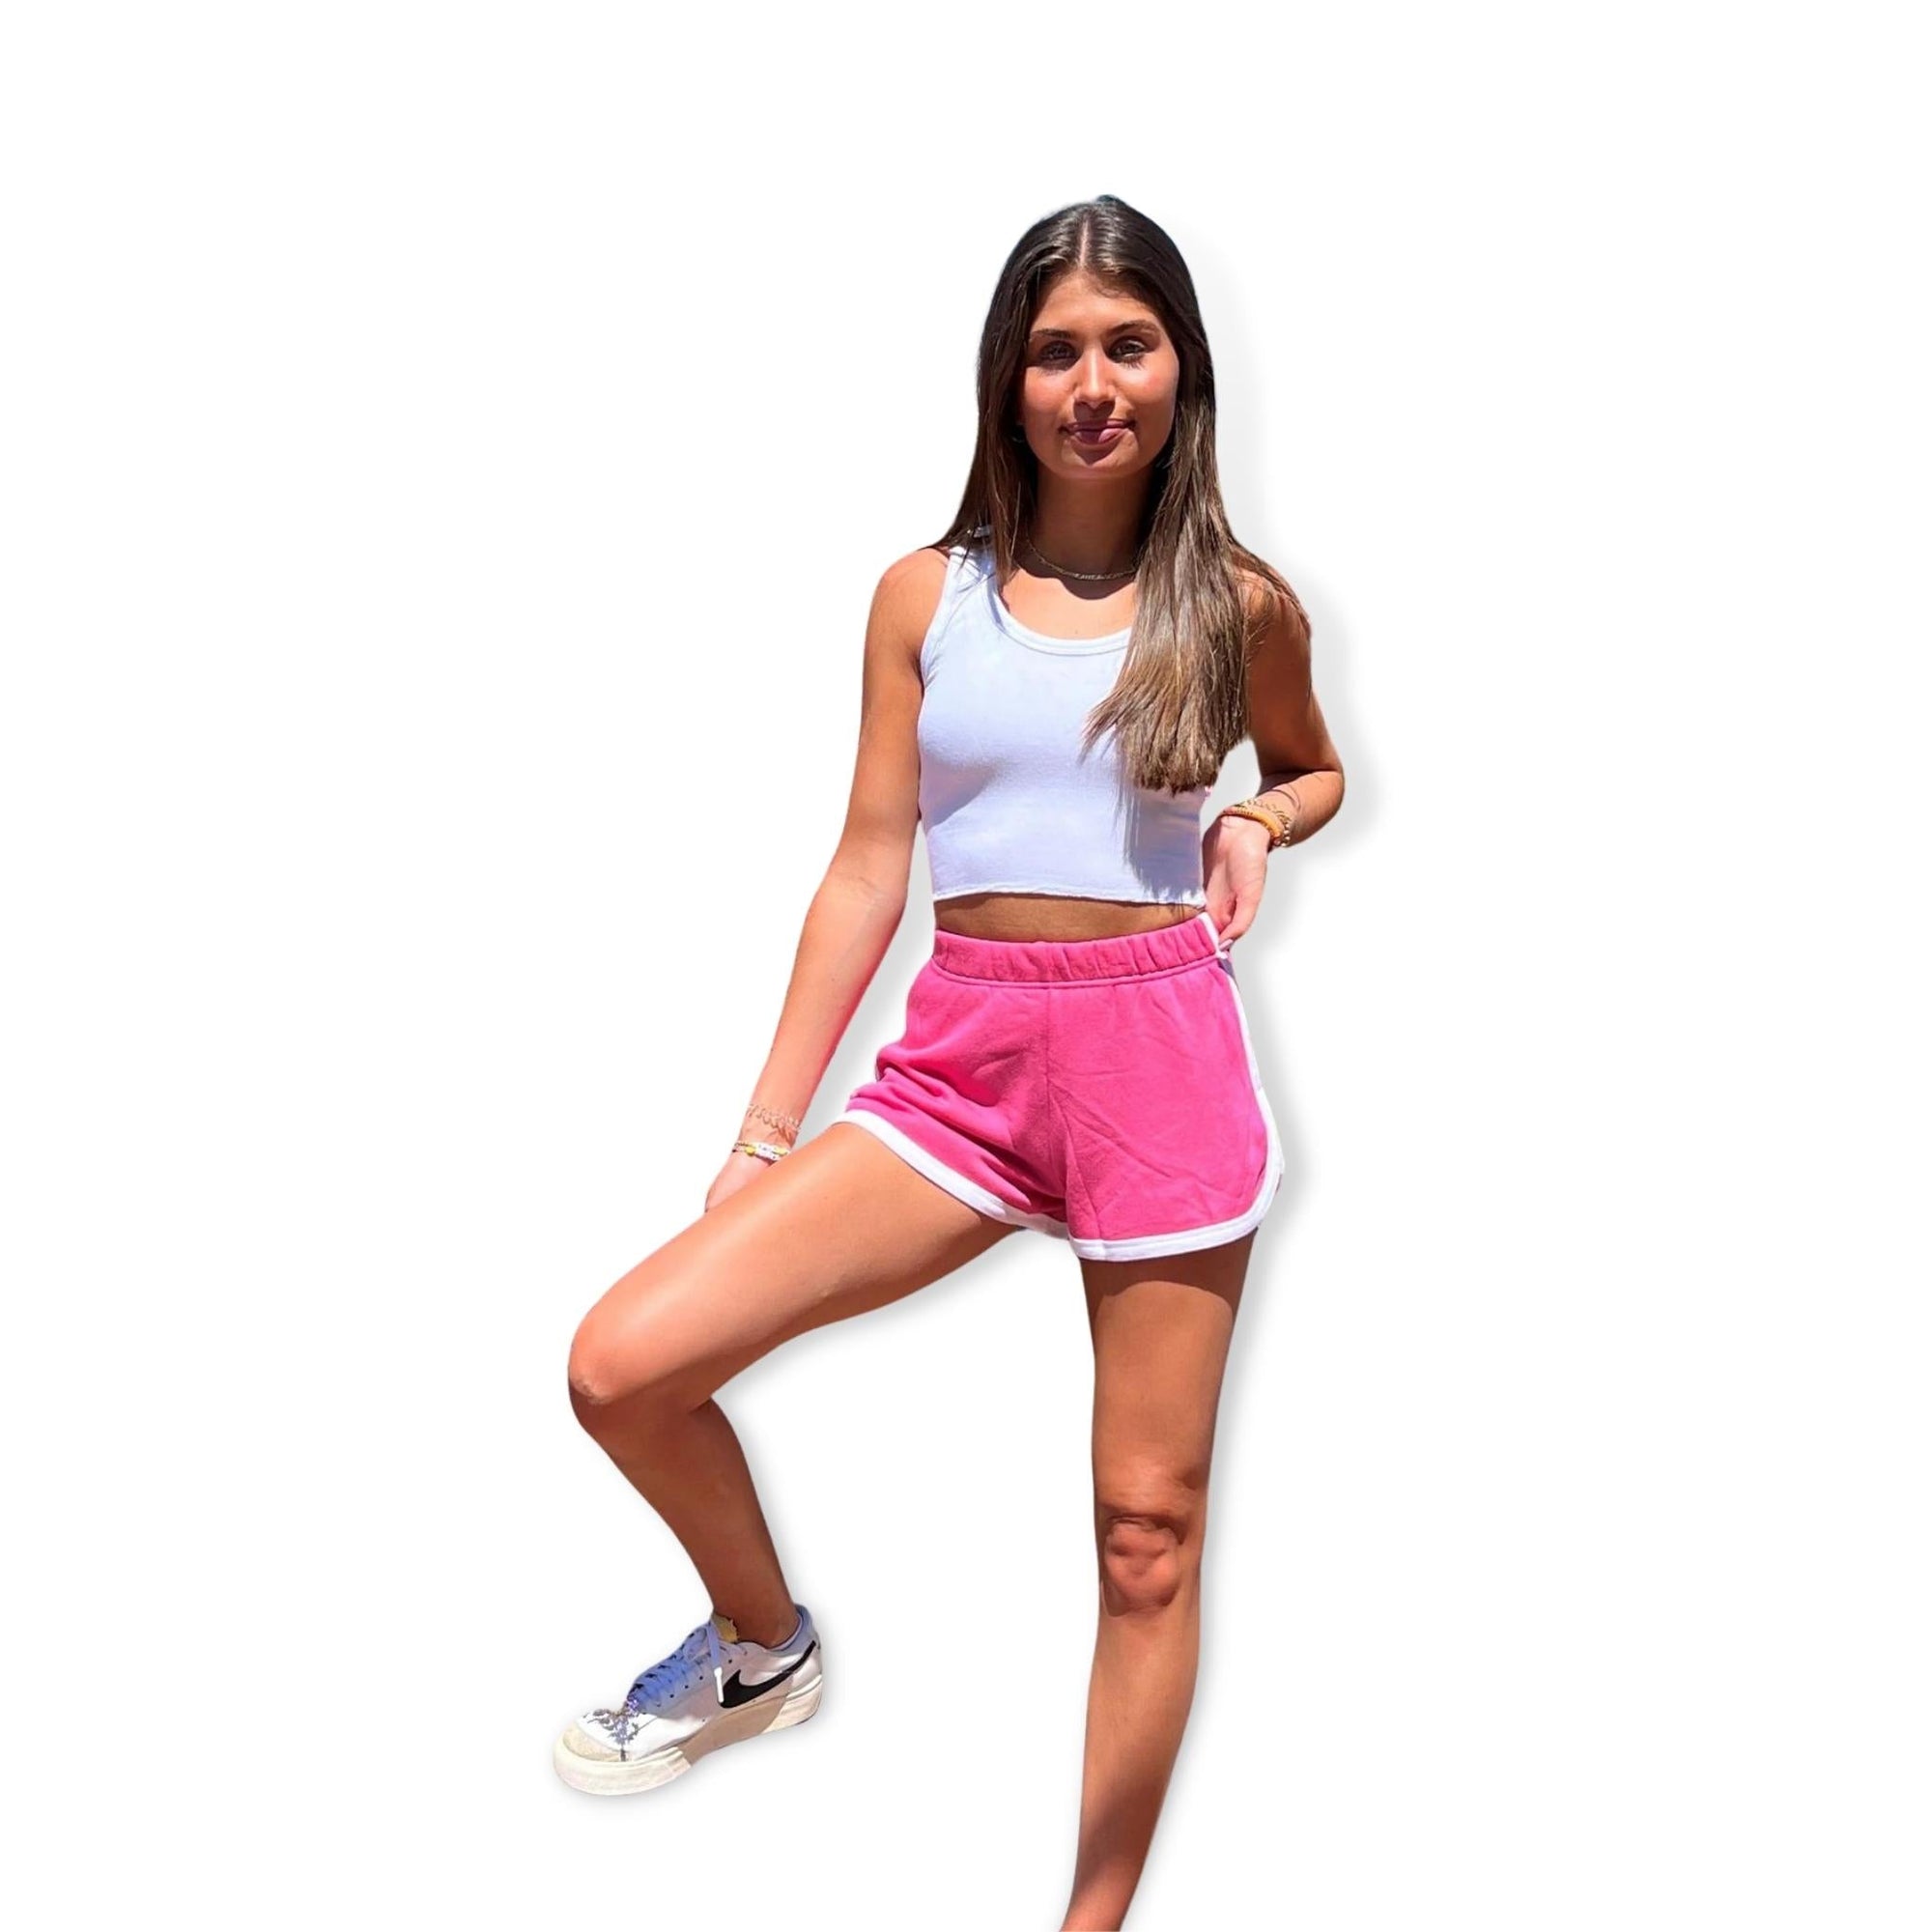 KatieJNYC Hot Pink Kimmie Shorts - a Spirit Animal - shorts $30-$60 active Jun 2022 bottoms